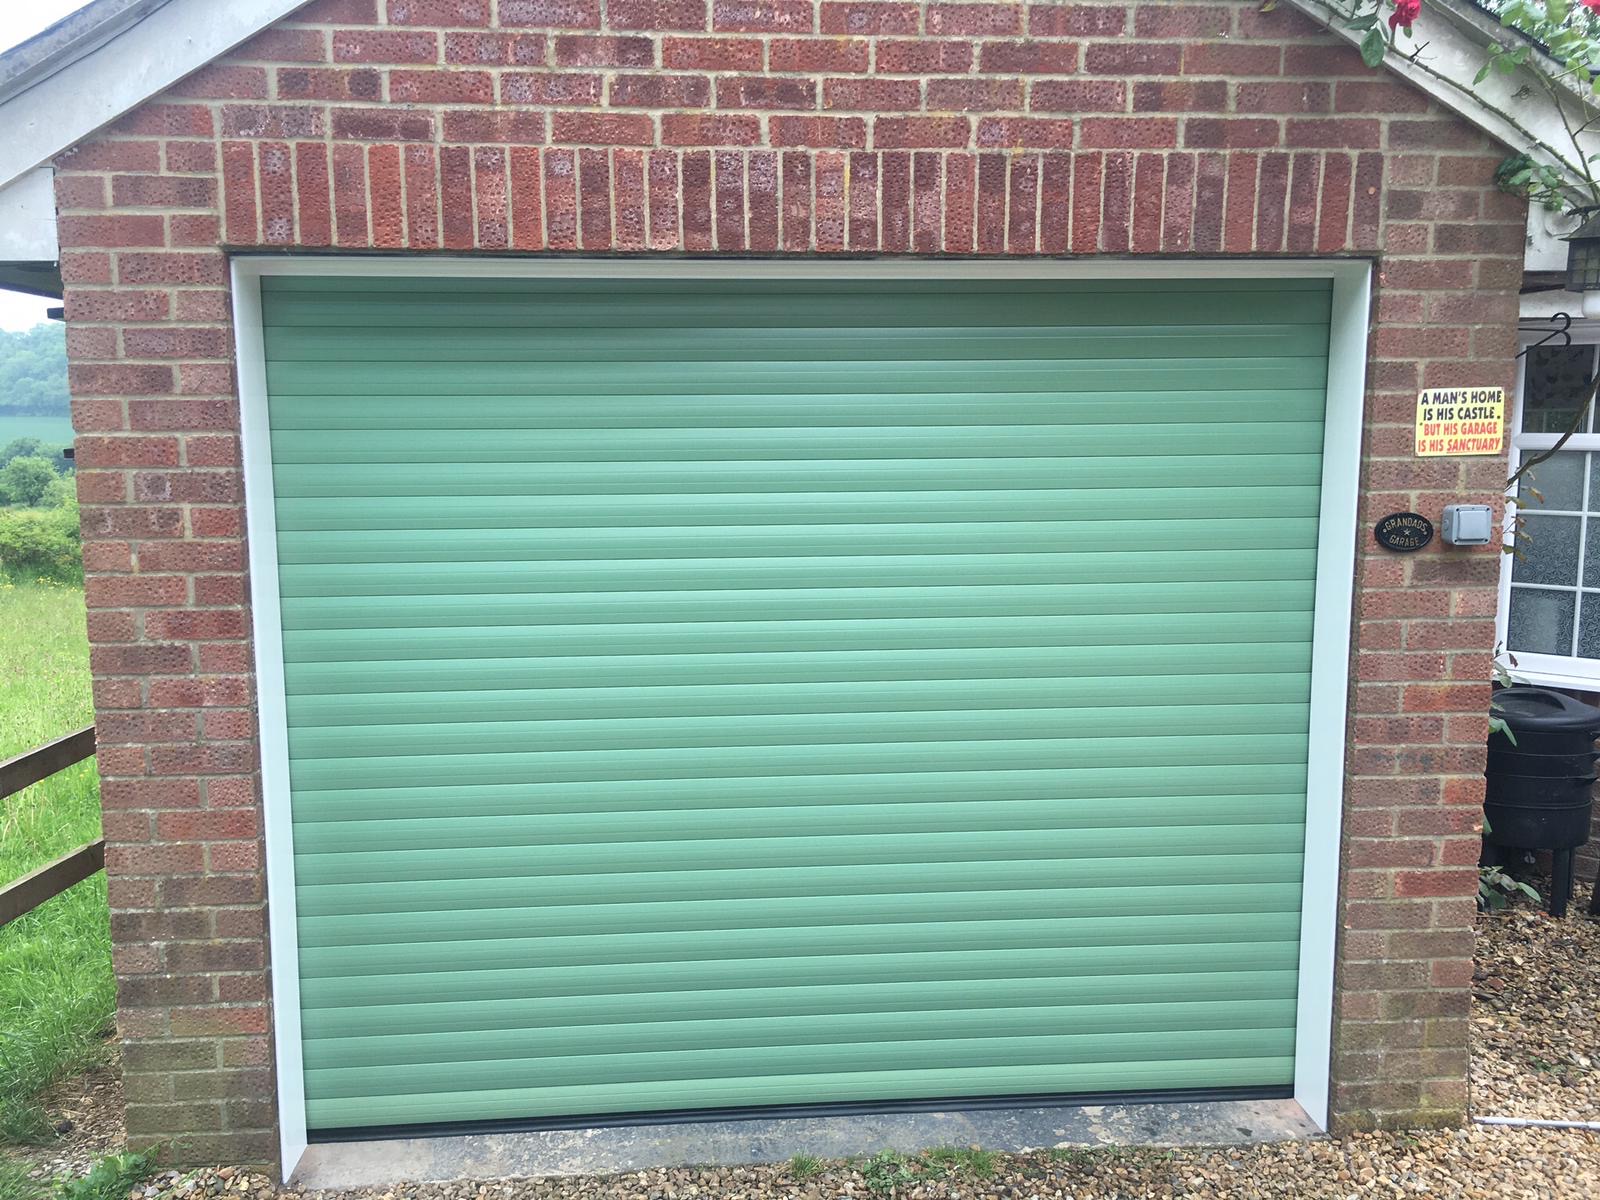 Meon Valley Garage Doors Ltd - Roller Doors - Southampton - Hampshire 